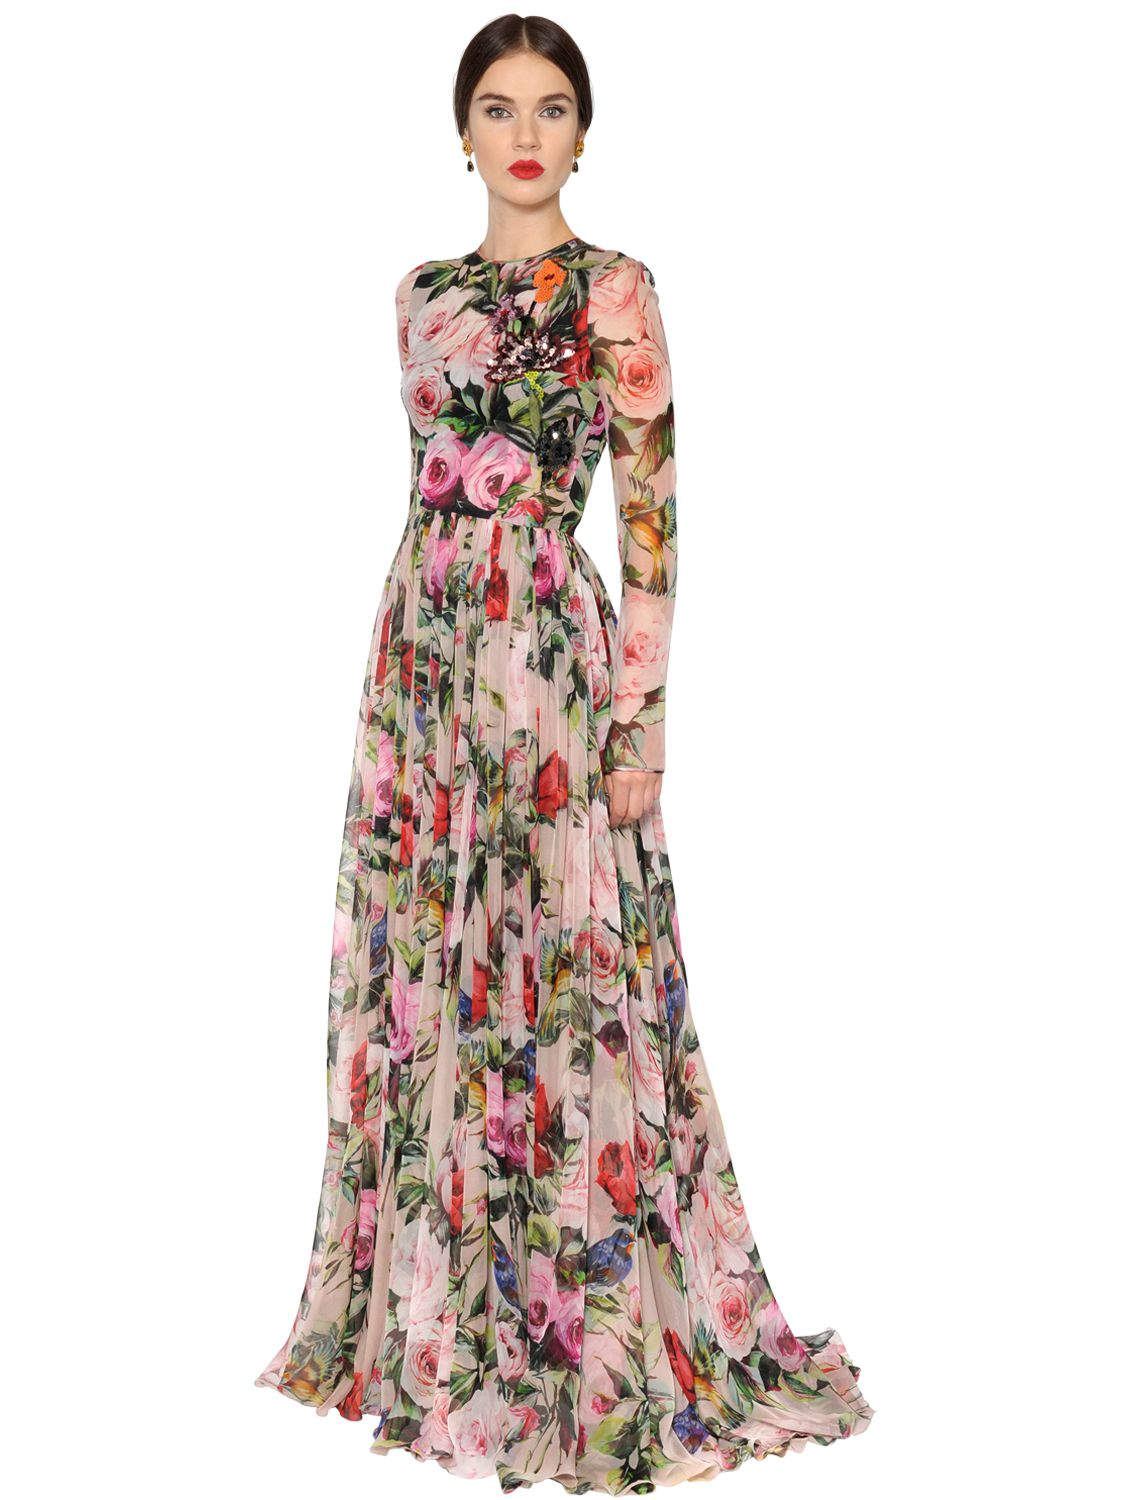 Длинное цветочное платье. Шелковое платье Дольче Габбана. Платье Dolce & Gabbana Floral Dress. Платье Дольче Габбана шелк. Dolce Gabbana длинное платье f6207t.